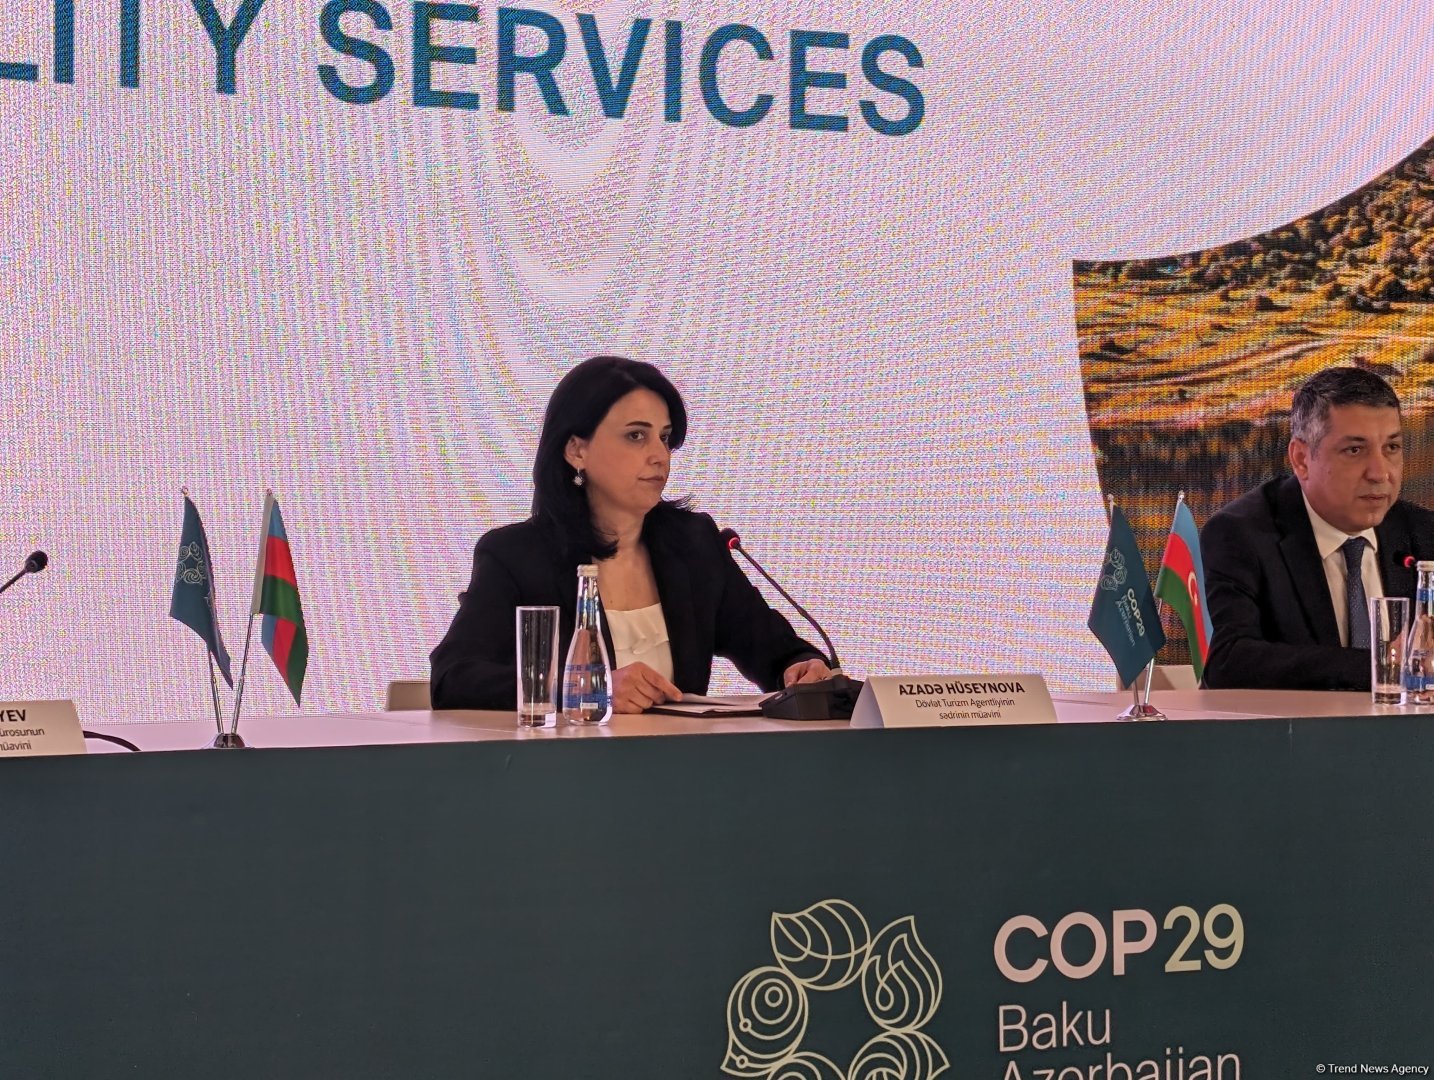 В Азербайджане приступили к работе по приведению туристической отрасли в полную готовность к COP29